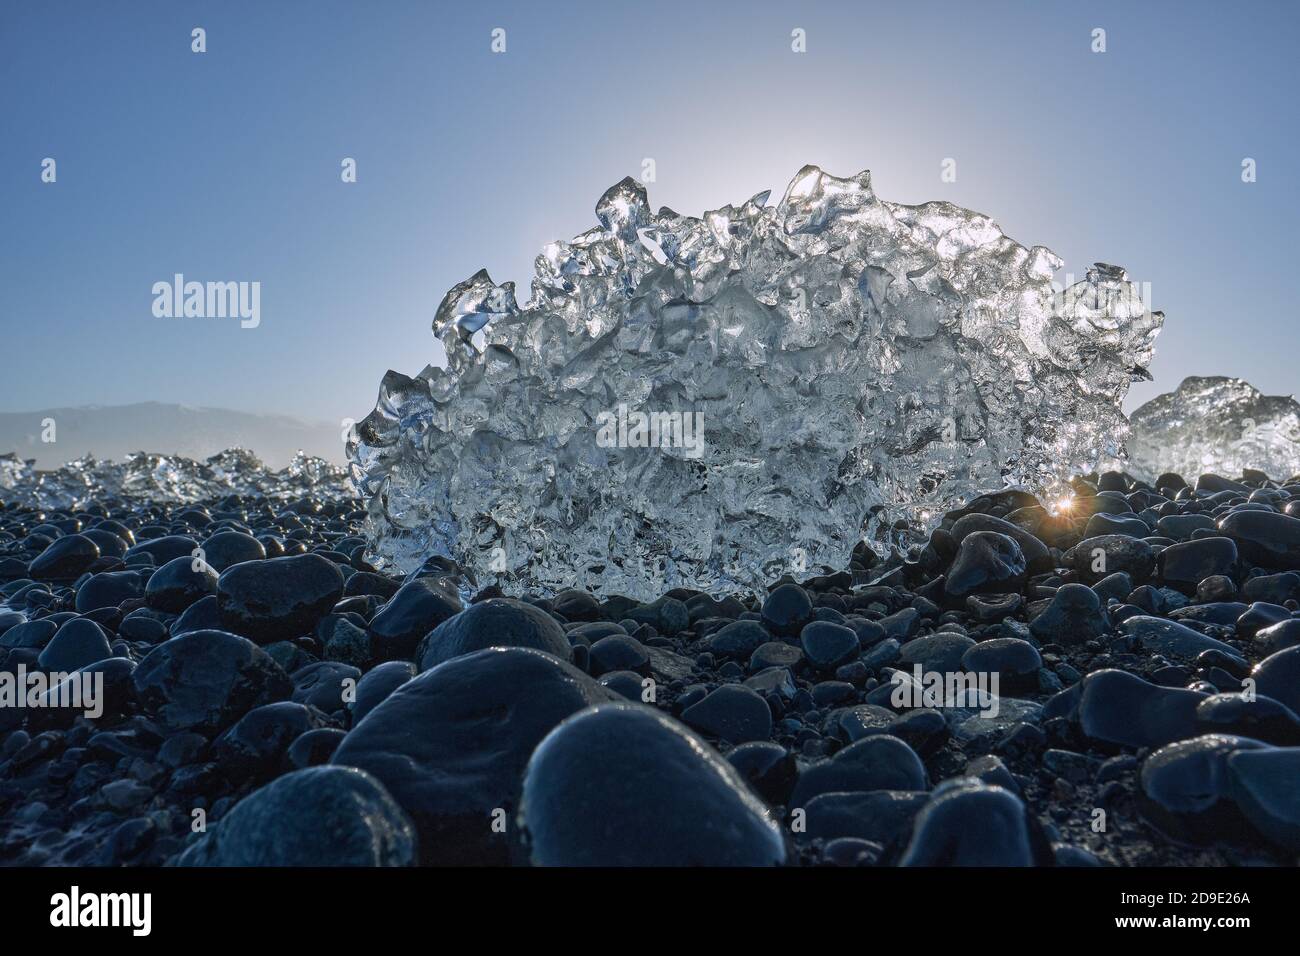 Sciogliendo frammenti di iceberg glaciale sulla spiaggia nera di ciottoli basaltici Di Jokulsarlon Islanda - sole che scioglie il ghiaccio - riscaldamento globale - cambiamento climatico Foto Stock